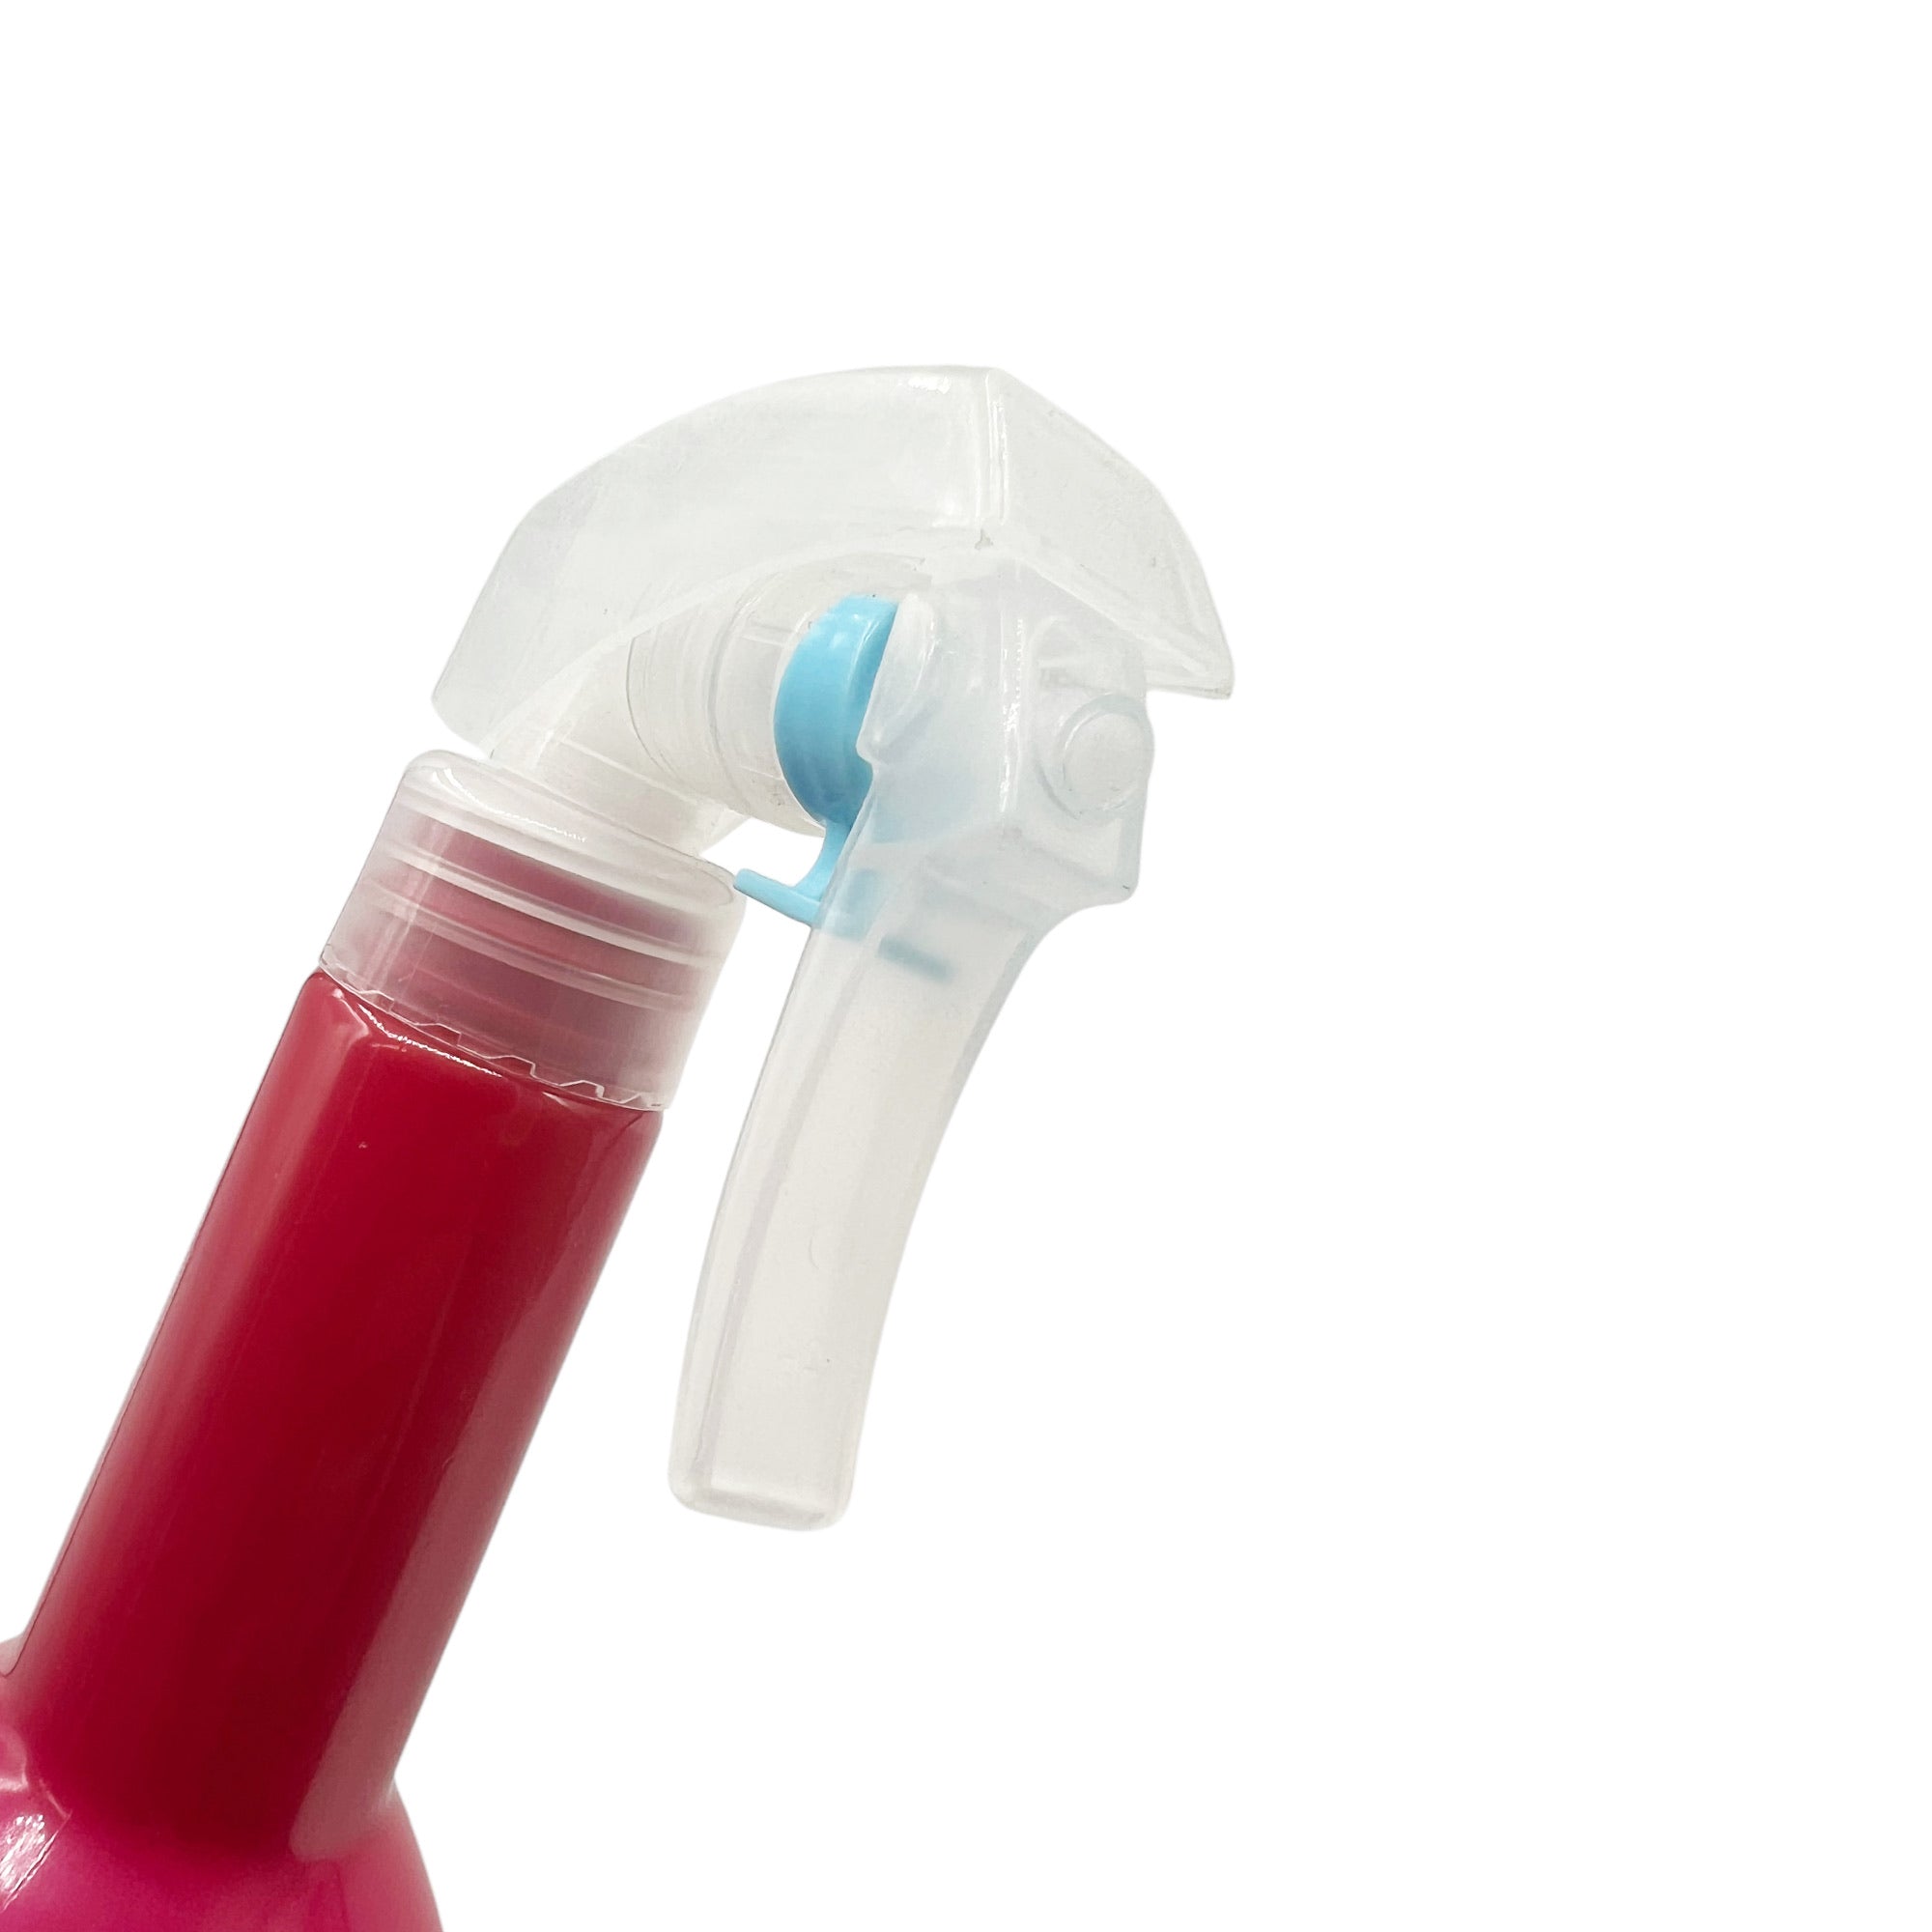 Eson - Water Spray Bottle 300ml Round Empty Refillable Ultra Fine Mist Sprayer (Hot Pink)